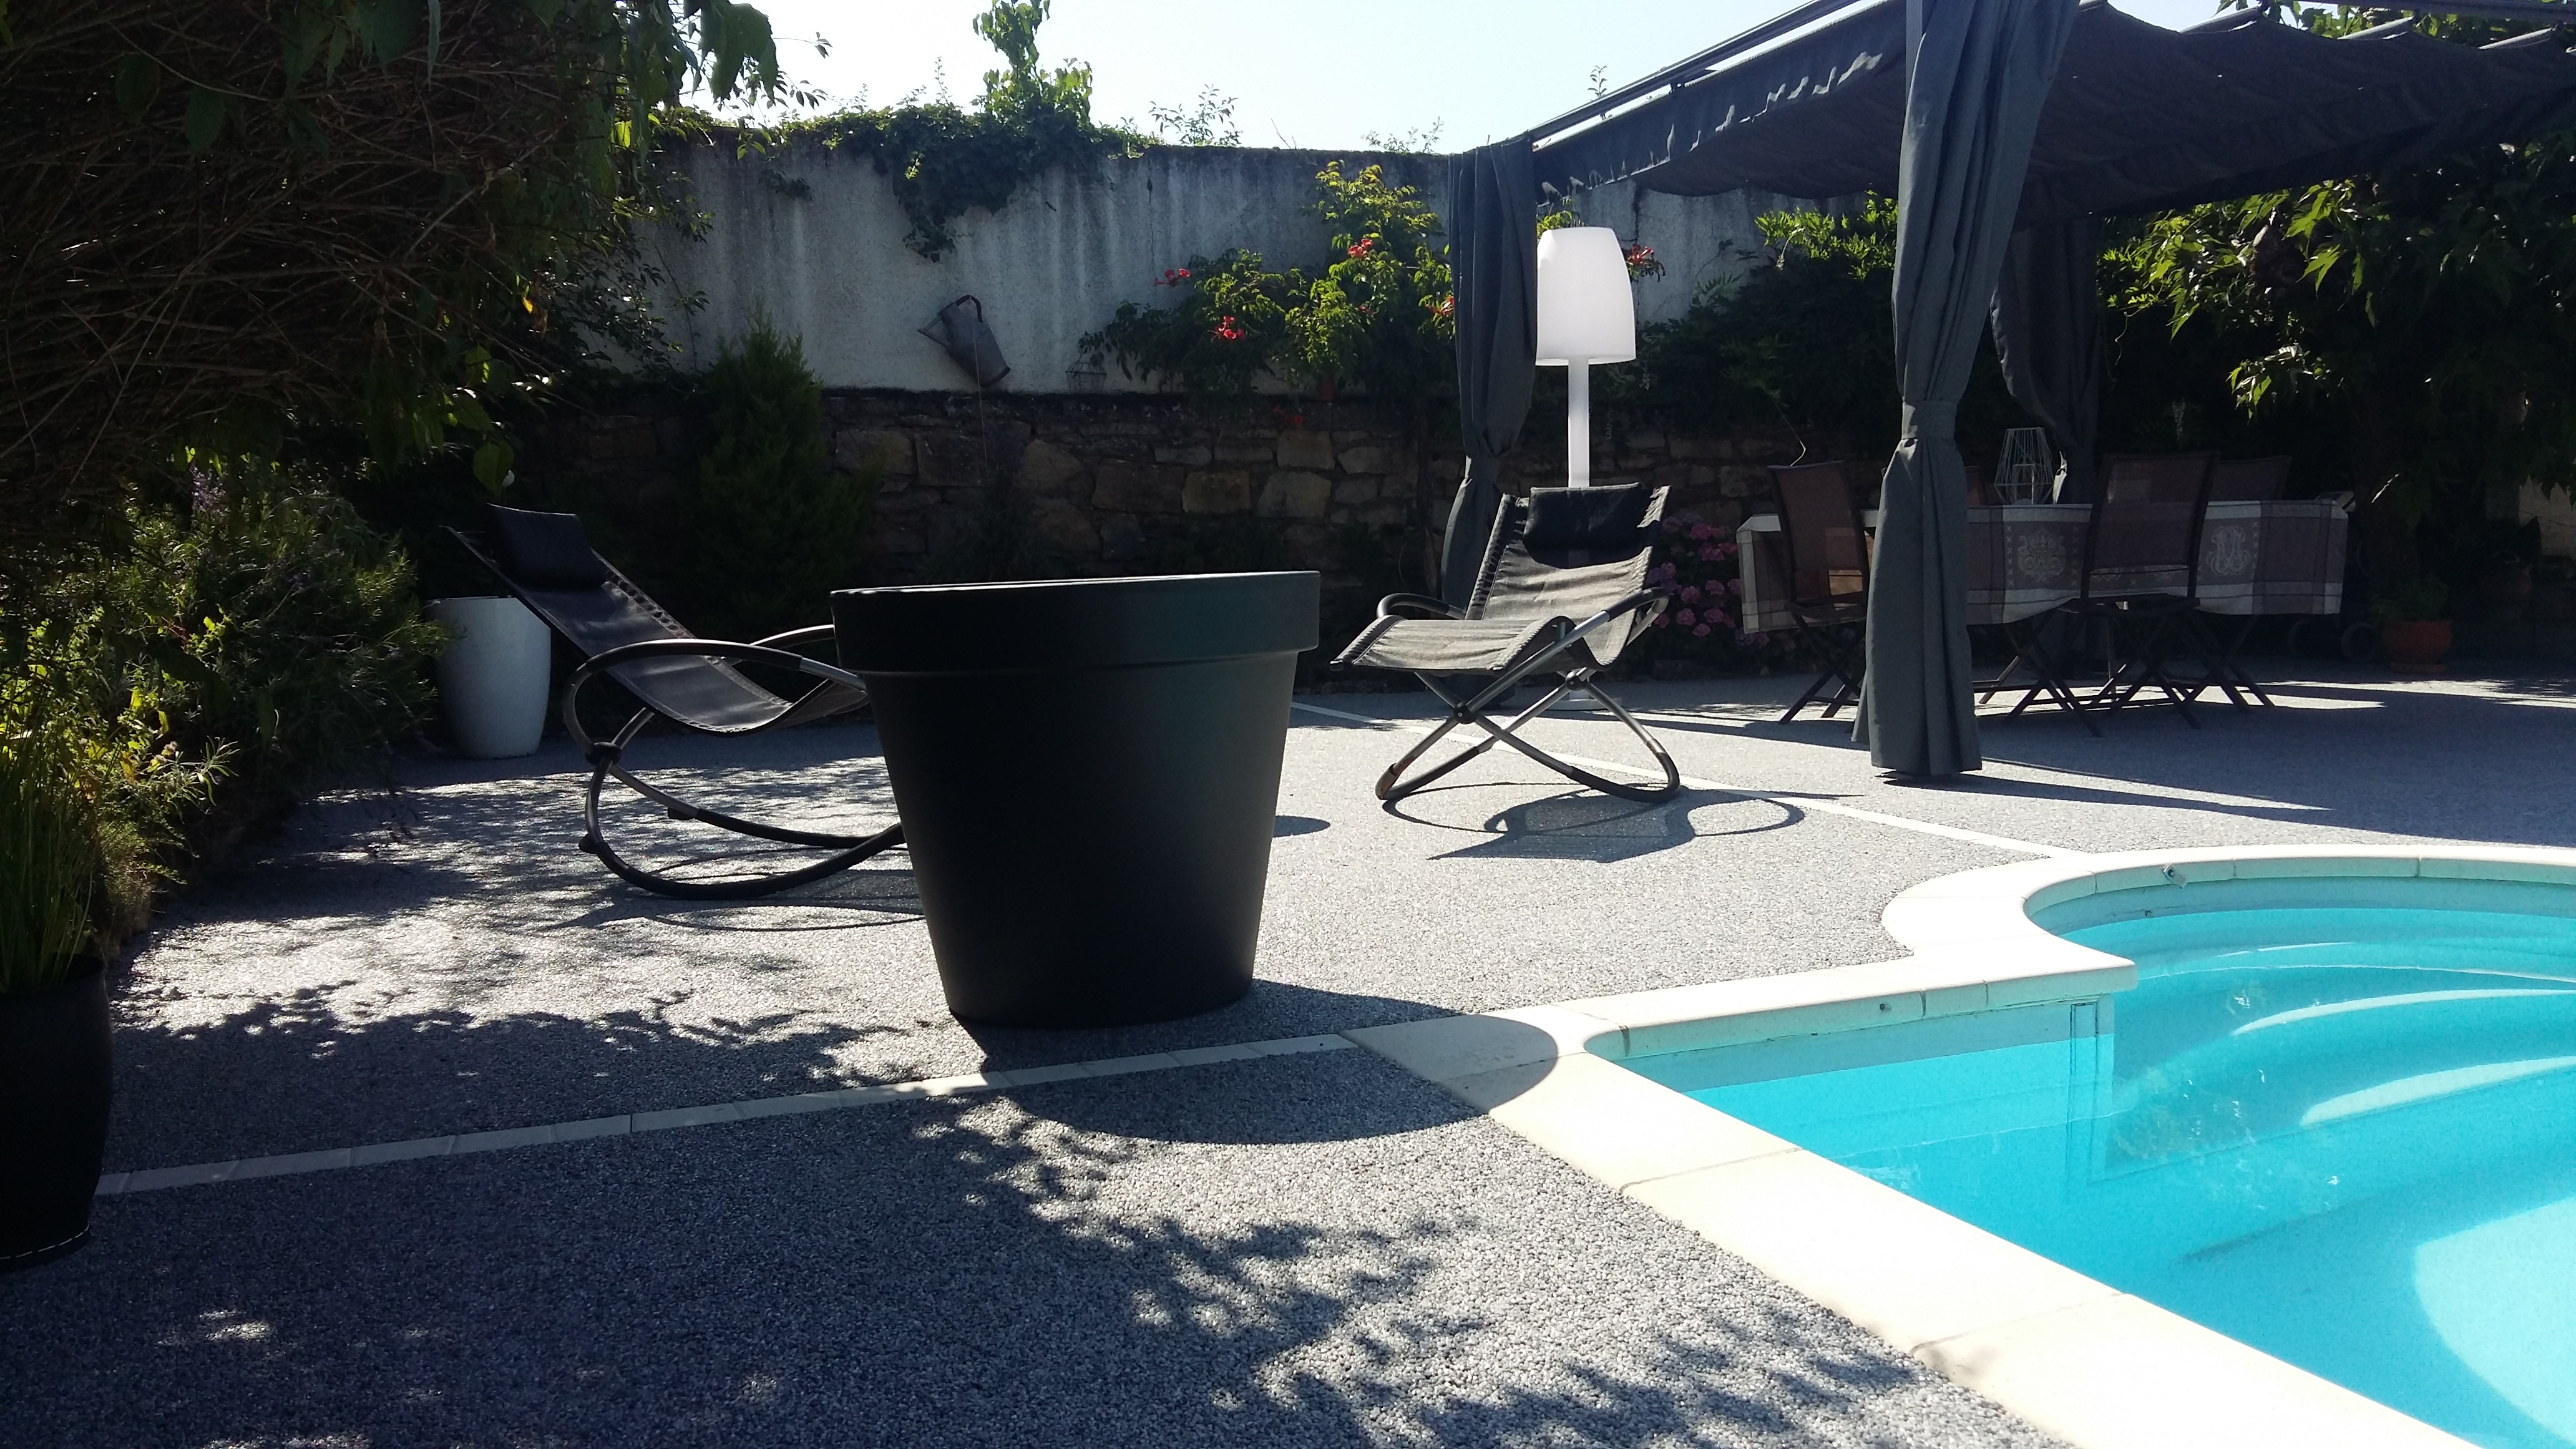 Ralisation Plage de piscine en Hydrostar - Entreprise Chierici - Aveyron cre le 12/09/2018